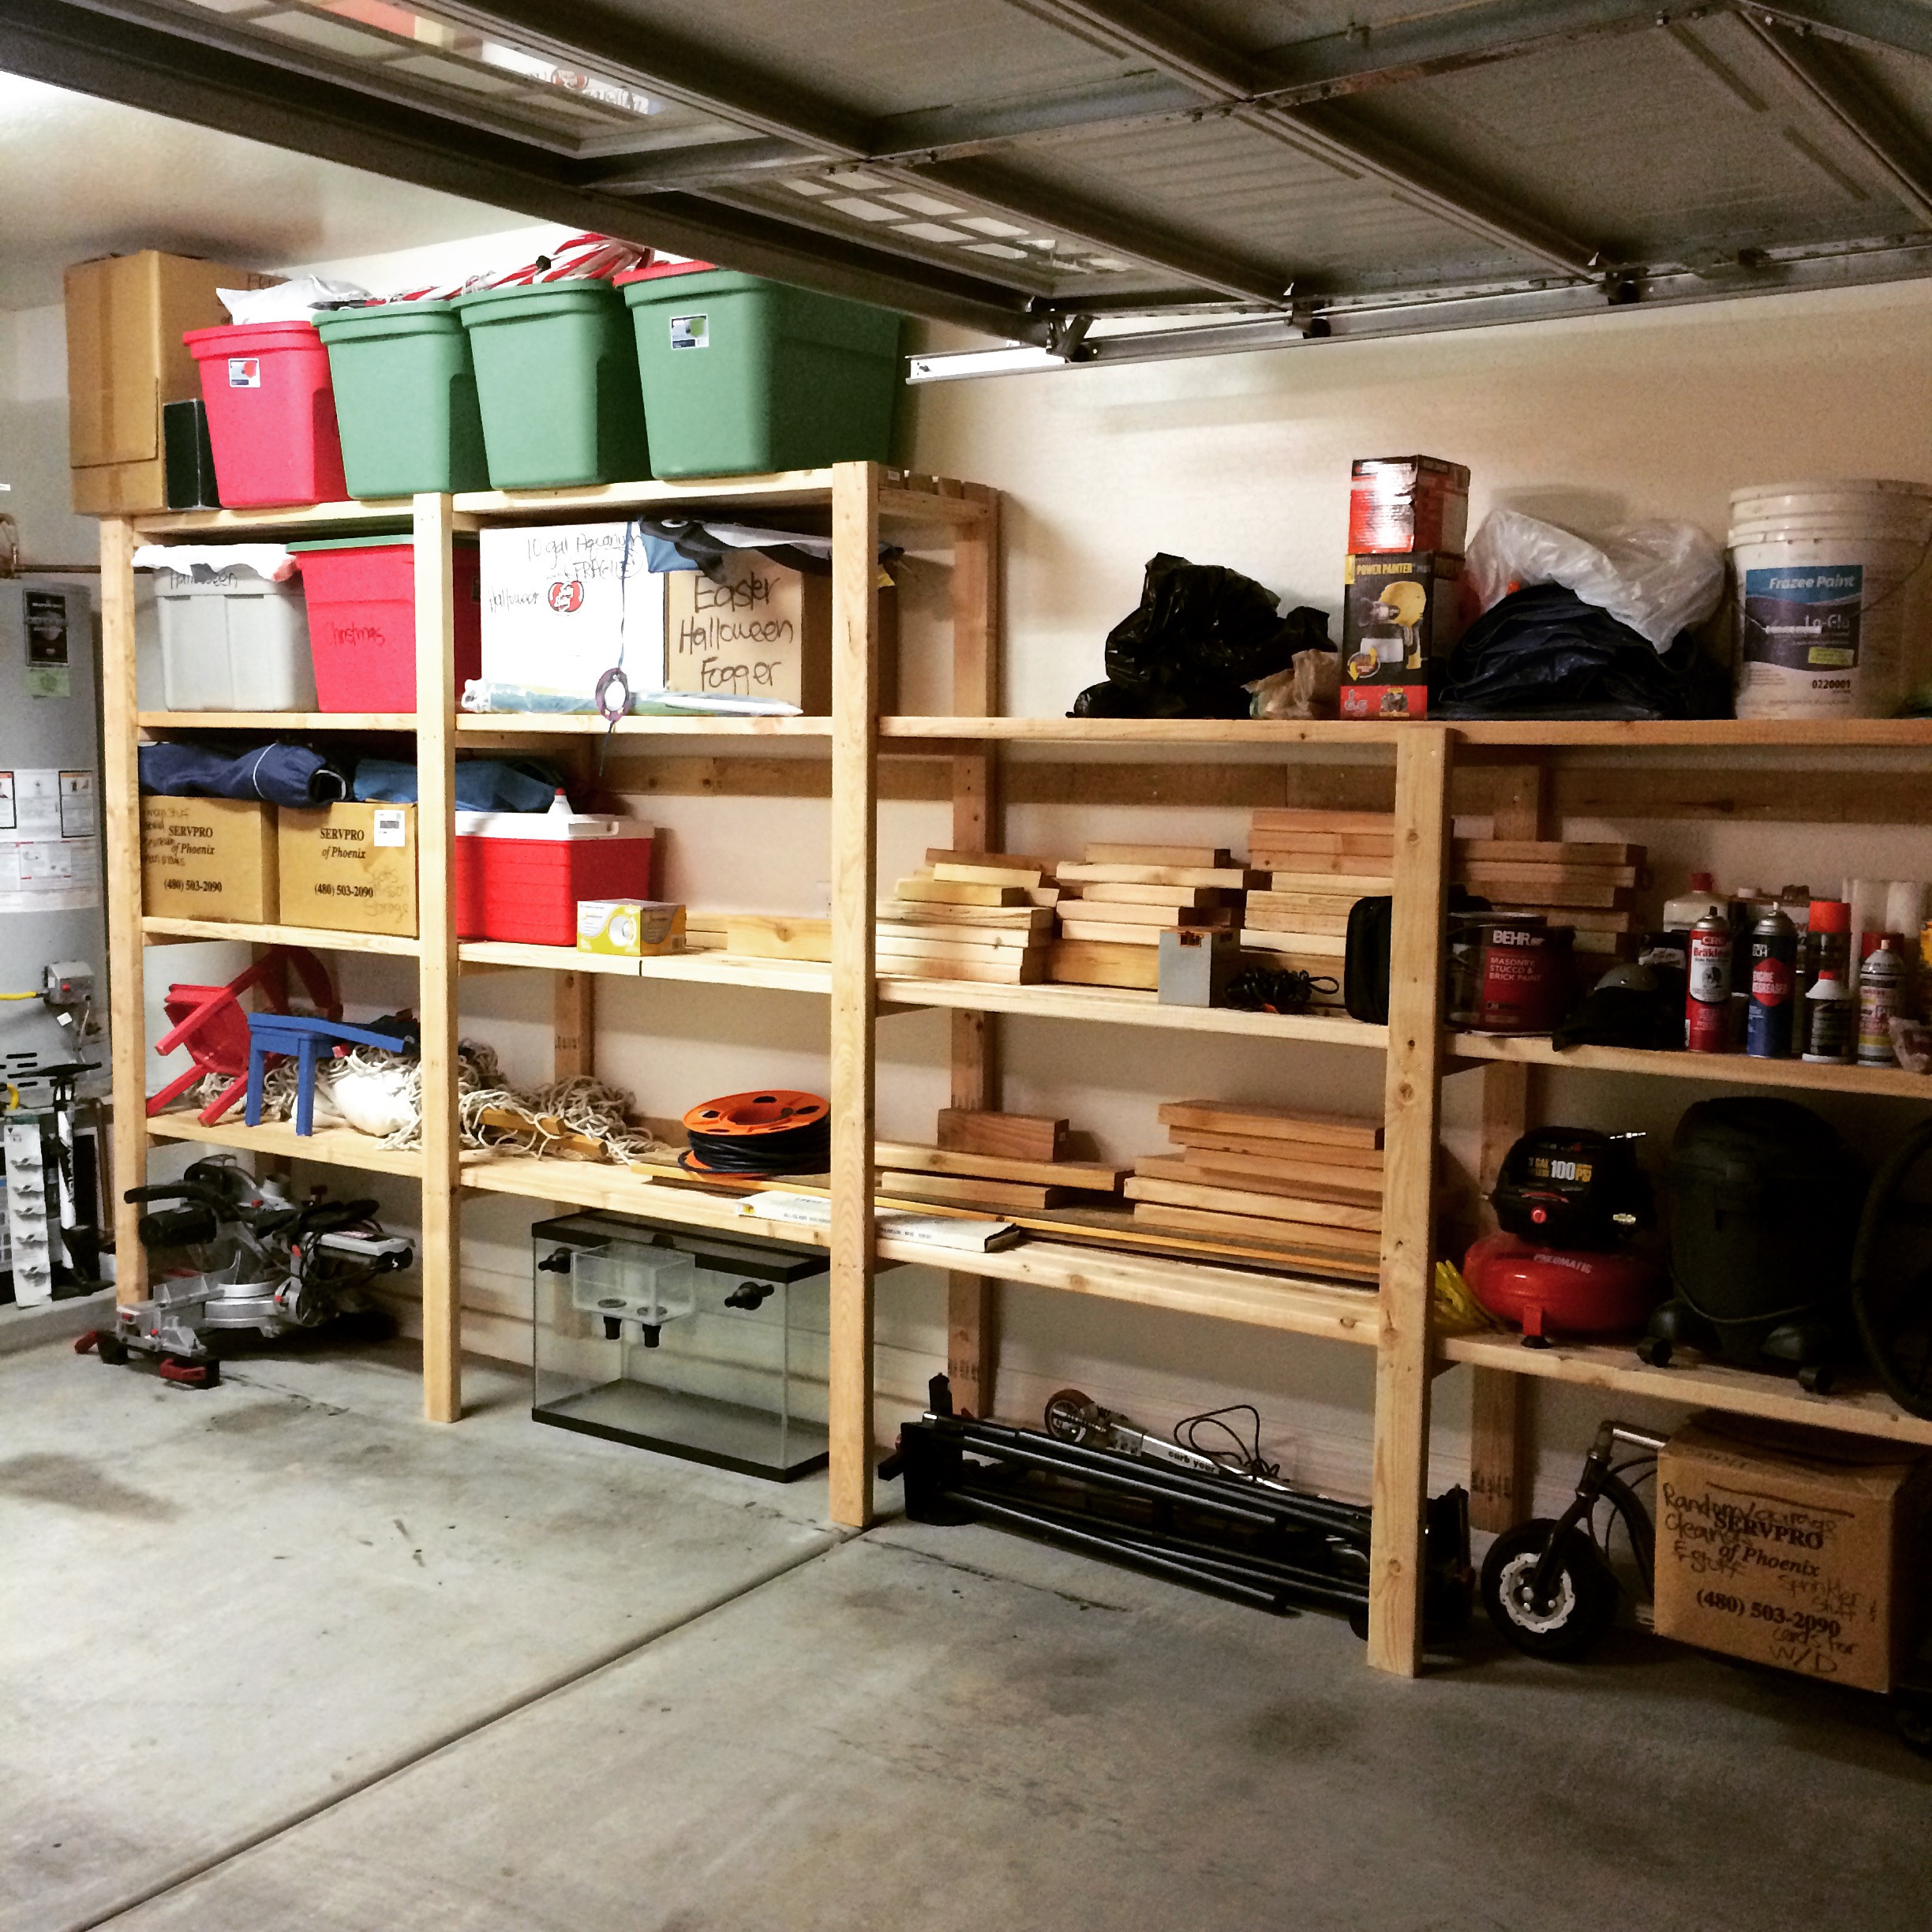 Best ideas about Diy Garage Storage
. Save or Pin DIY Garage Storage Favorite Plans Now.